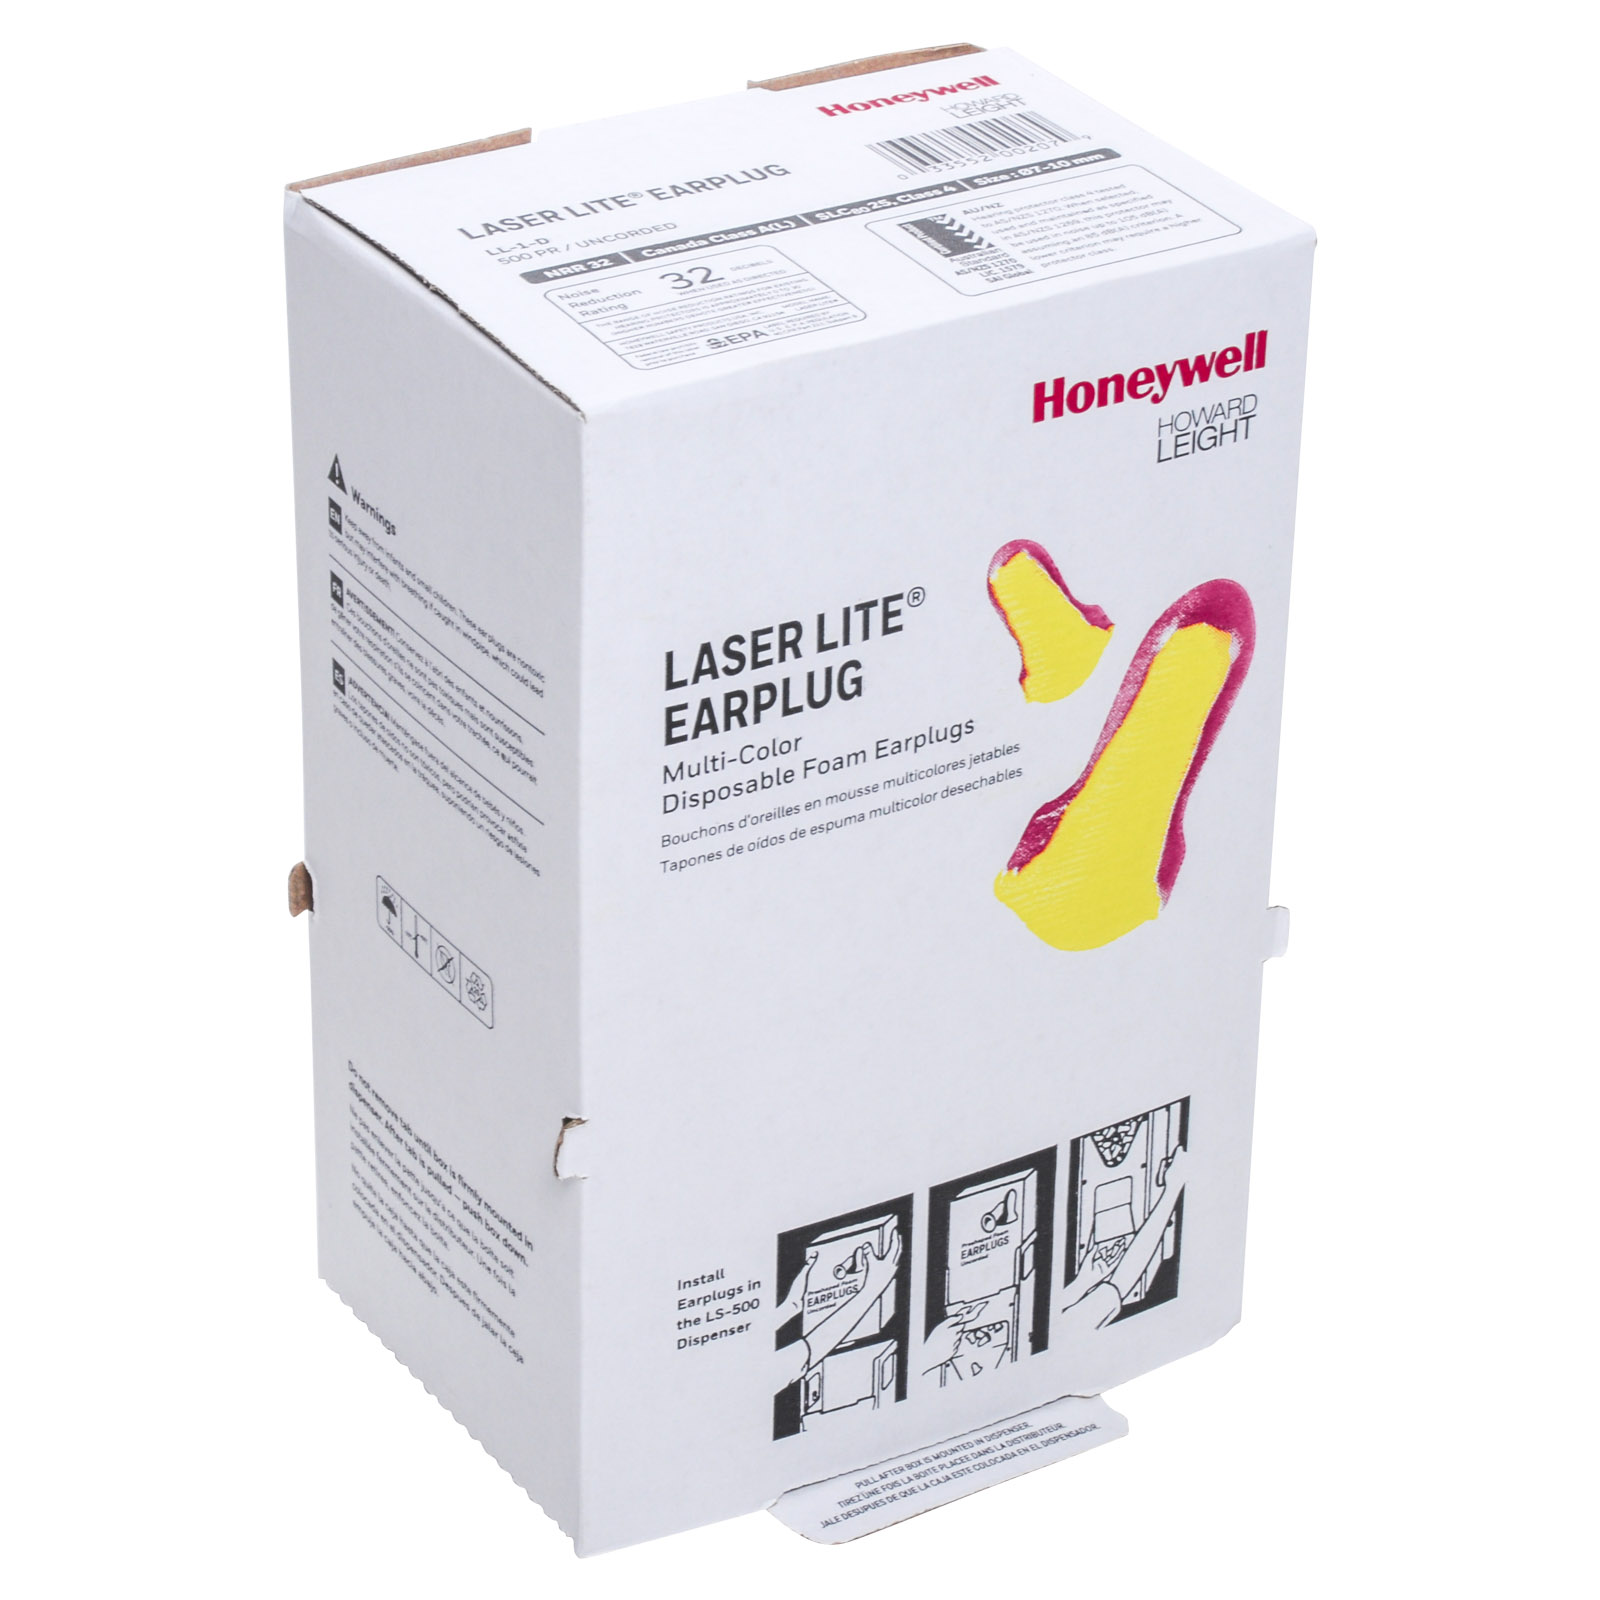 Howard Laser Lite Multi-Color mousse bouchon d'oreilles jetable recharge Pack 500 Paires 